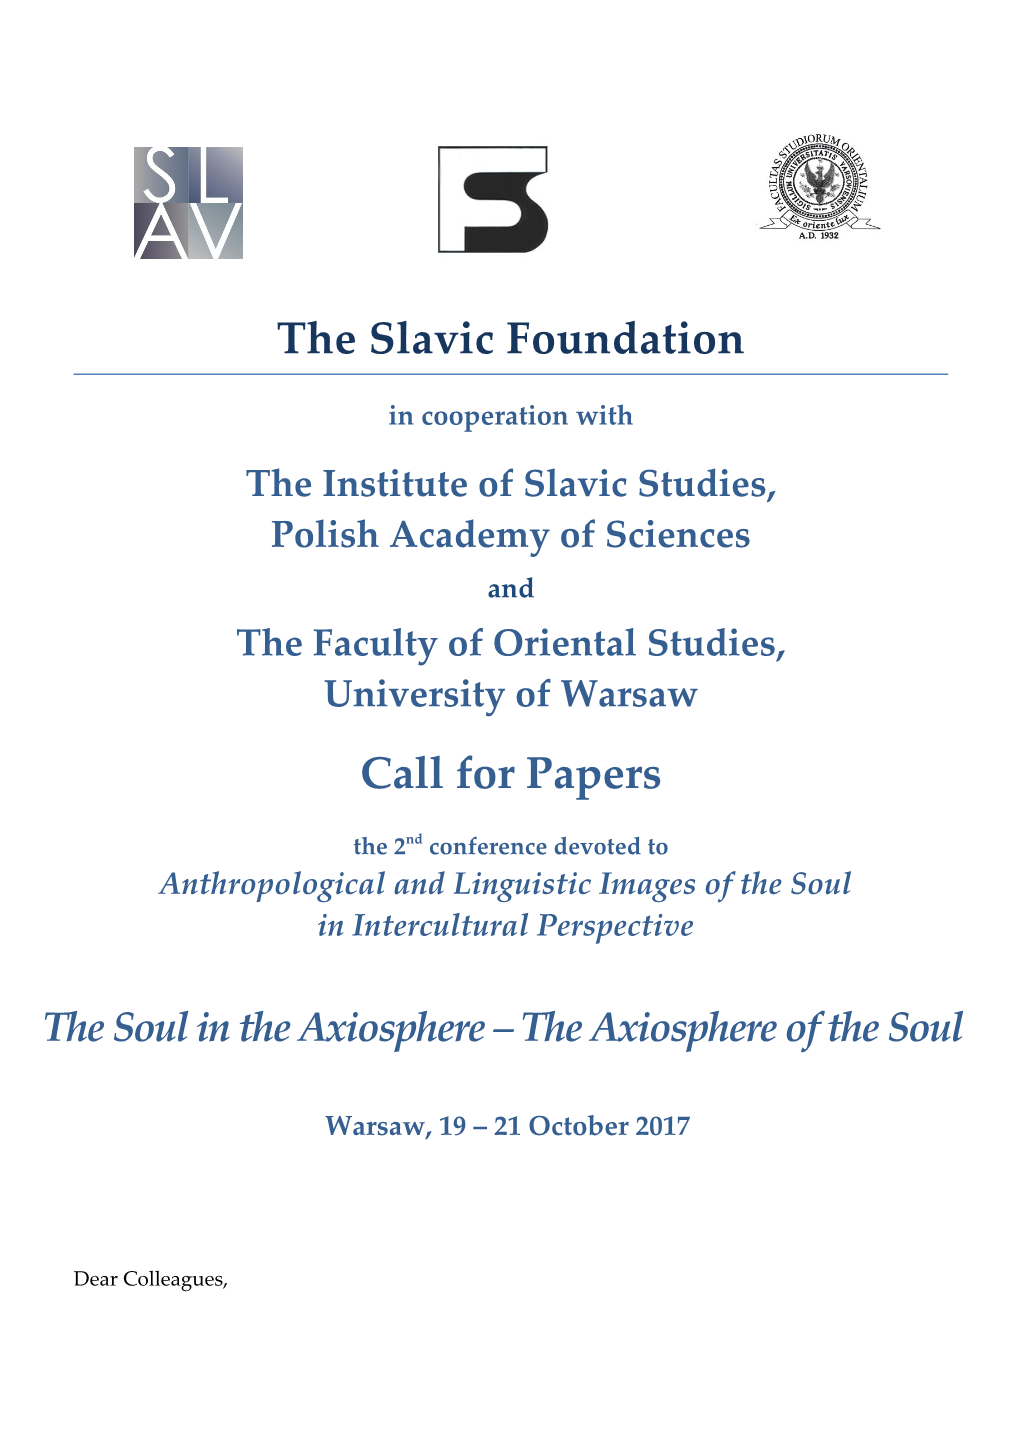 The Institute of Slavic Studies